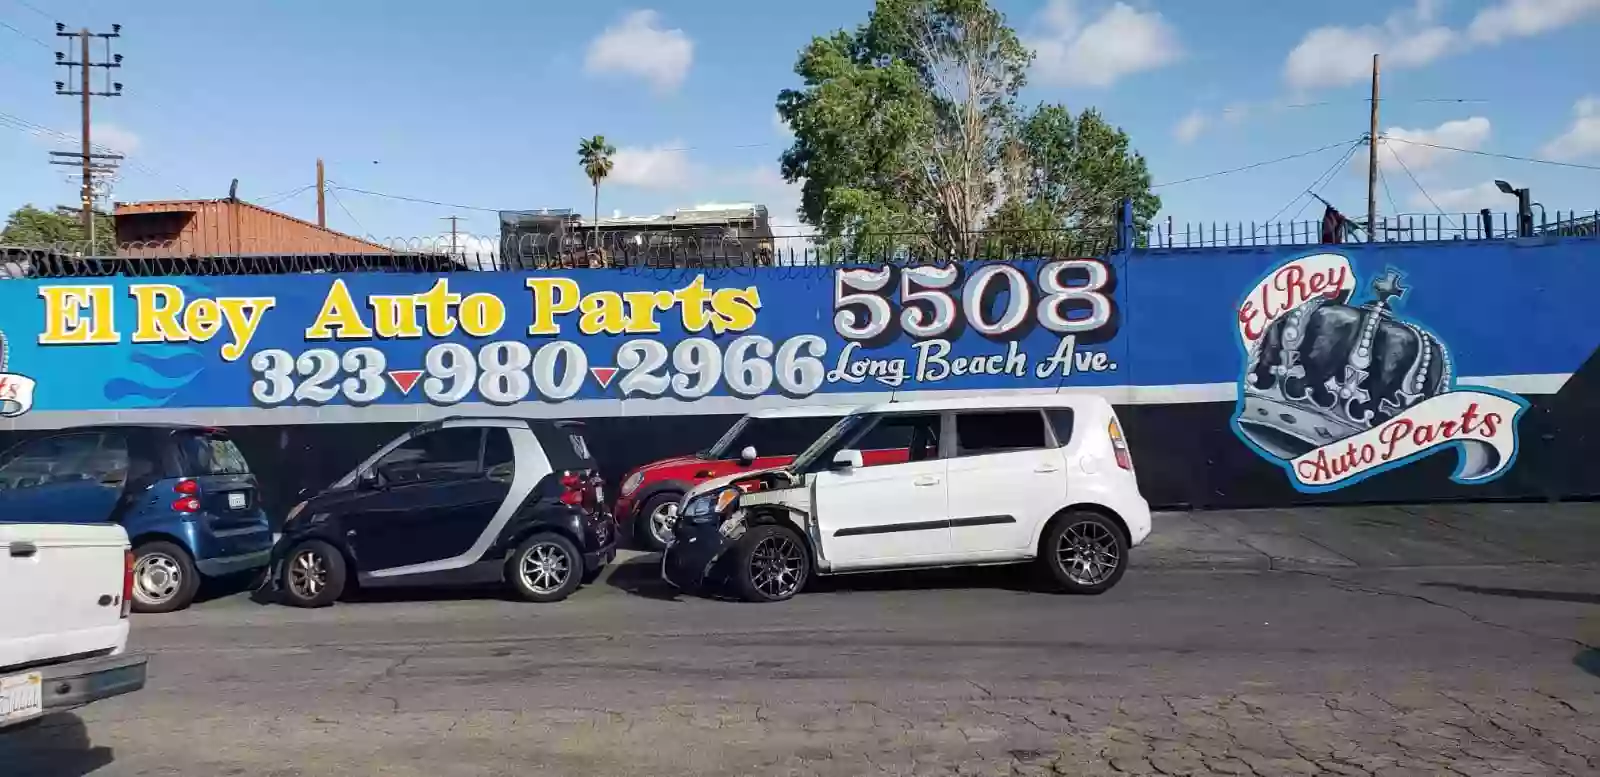 El Rey Auto Parts Corp